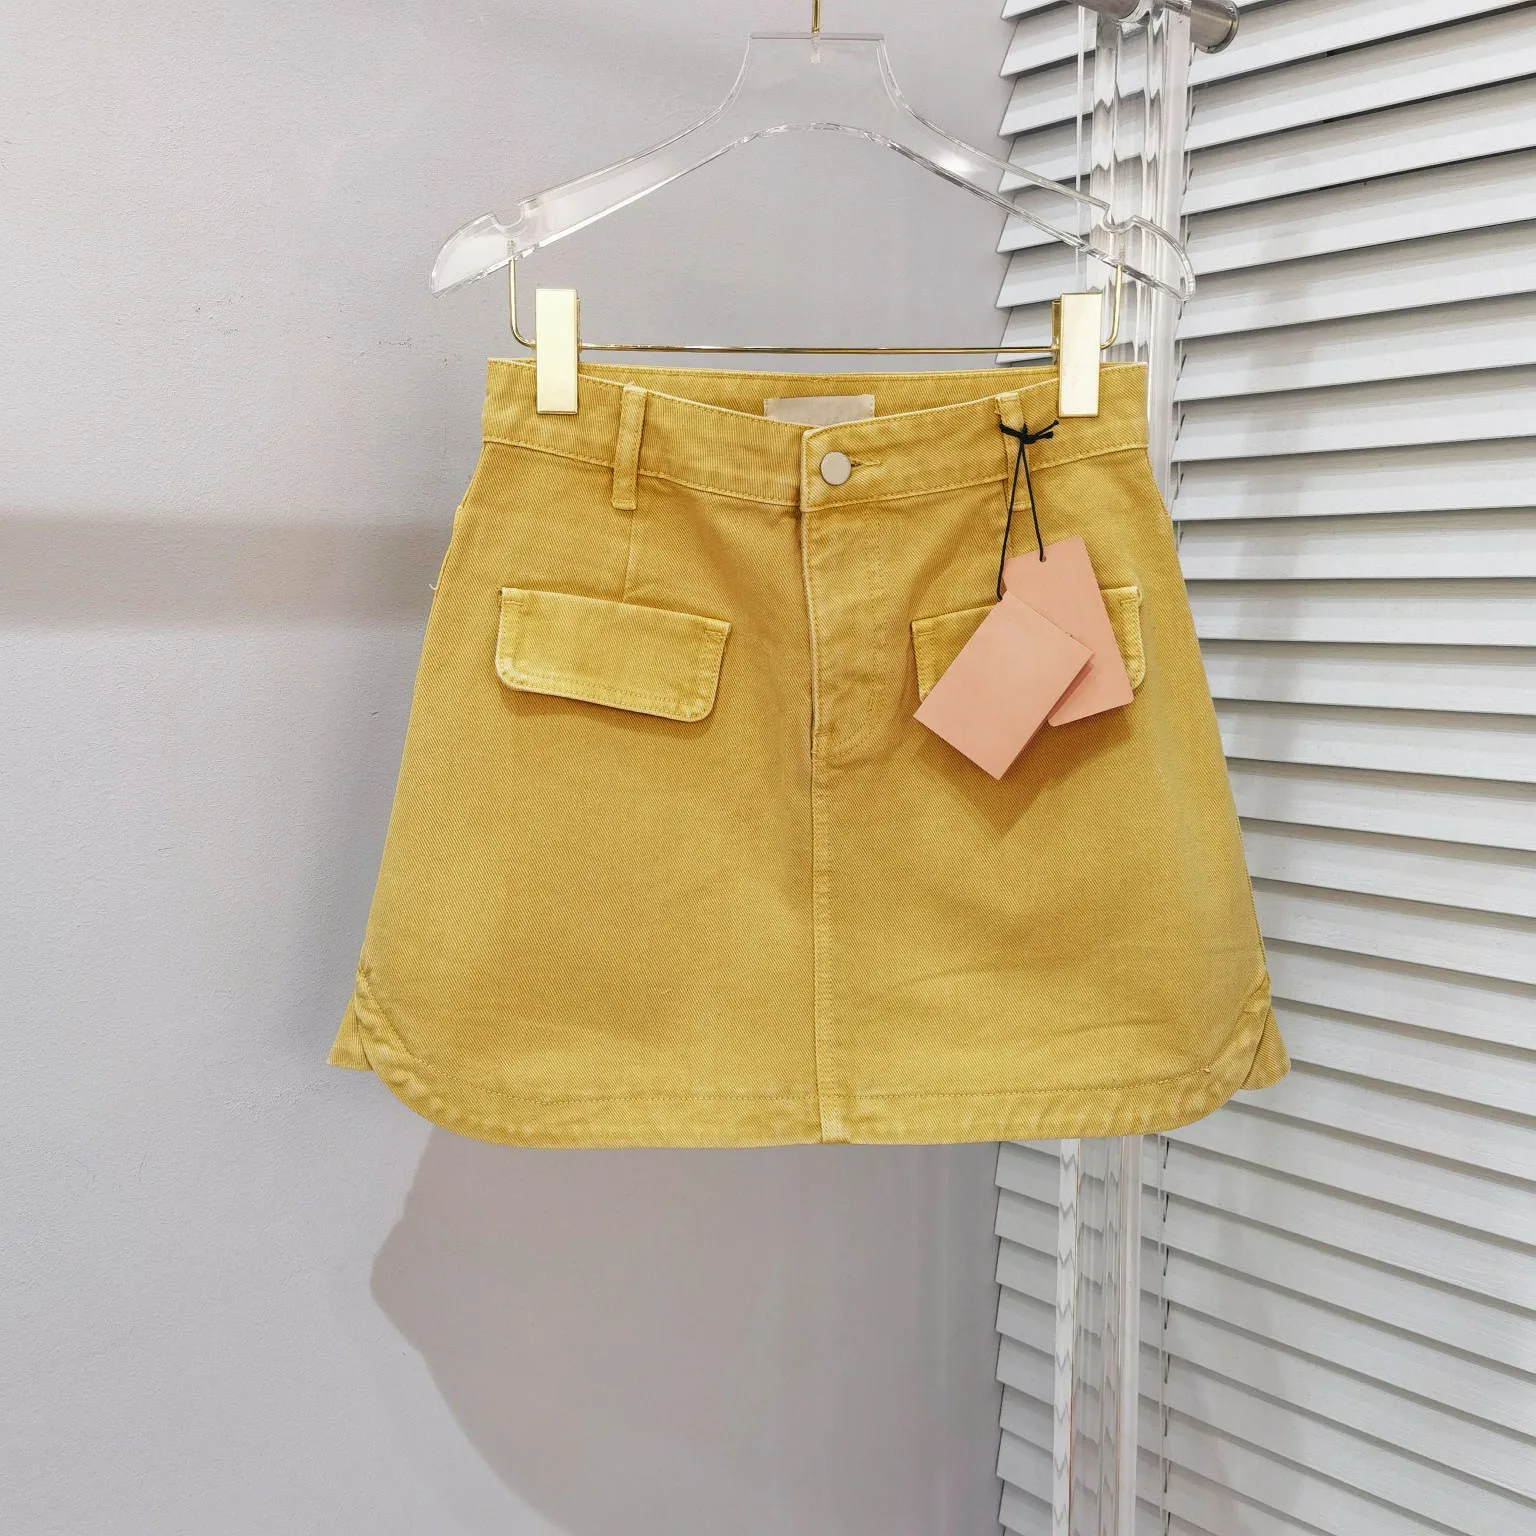 Новая желтая джинсовая юбка наполовину, дизайн поддельного кармана спереди, дизайн поддельных двух маленьких шлейфов юбки, досуг для снижения возраста . ' - ' . 0